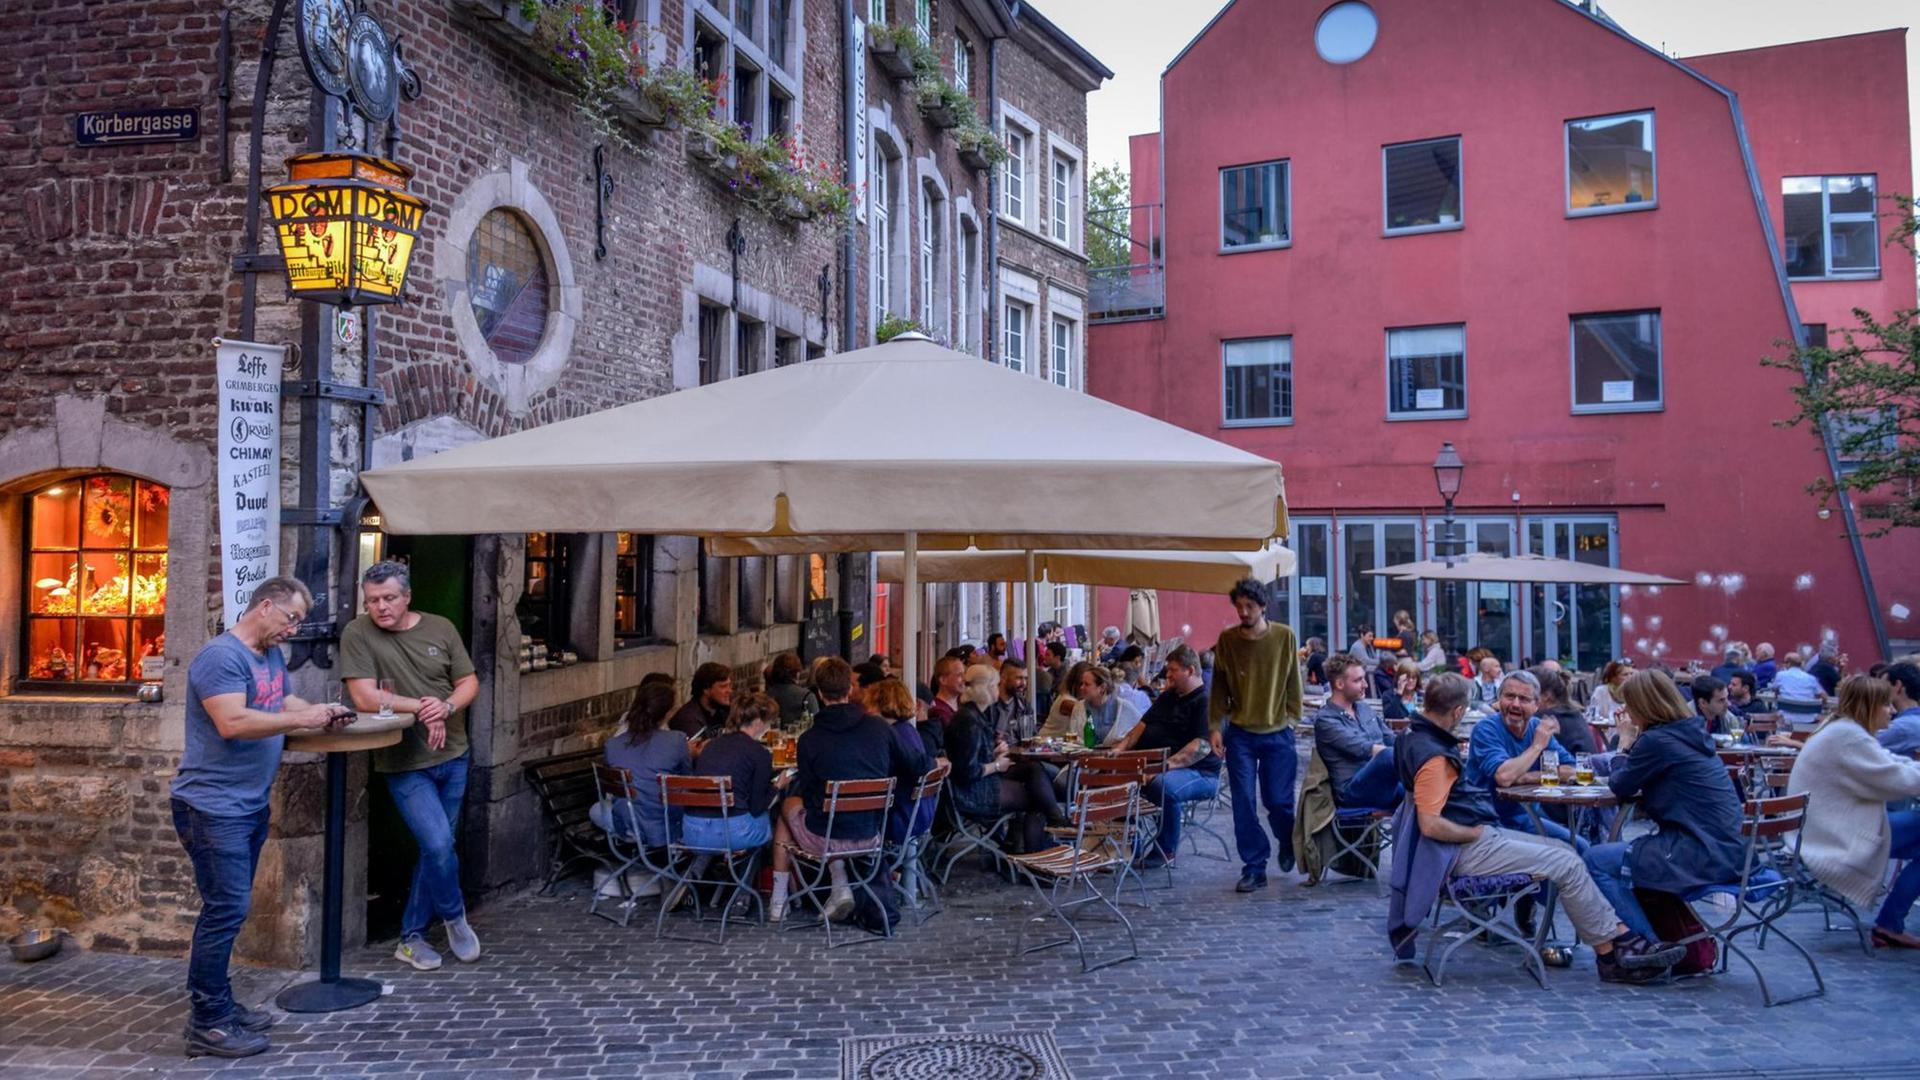 Das Bild zeigt mehrere Menschen, die draußen an Tischen eines Restaurants sitzen